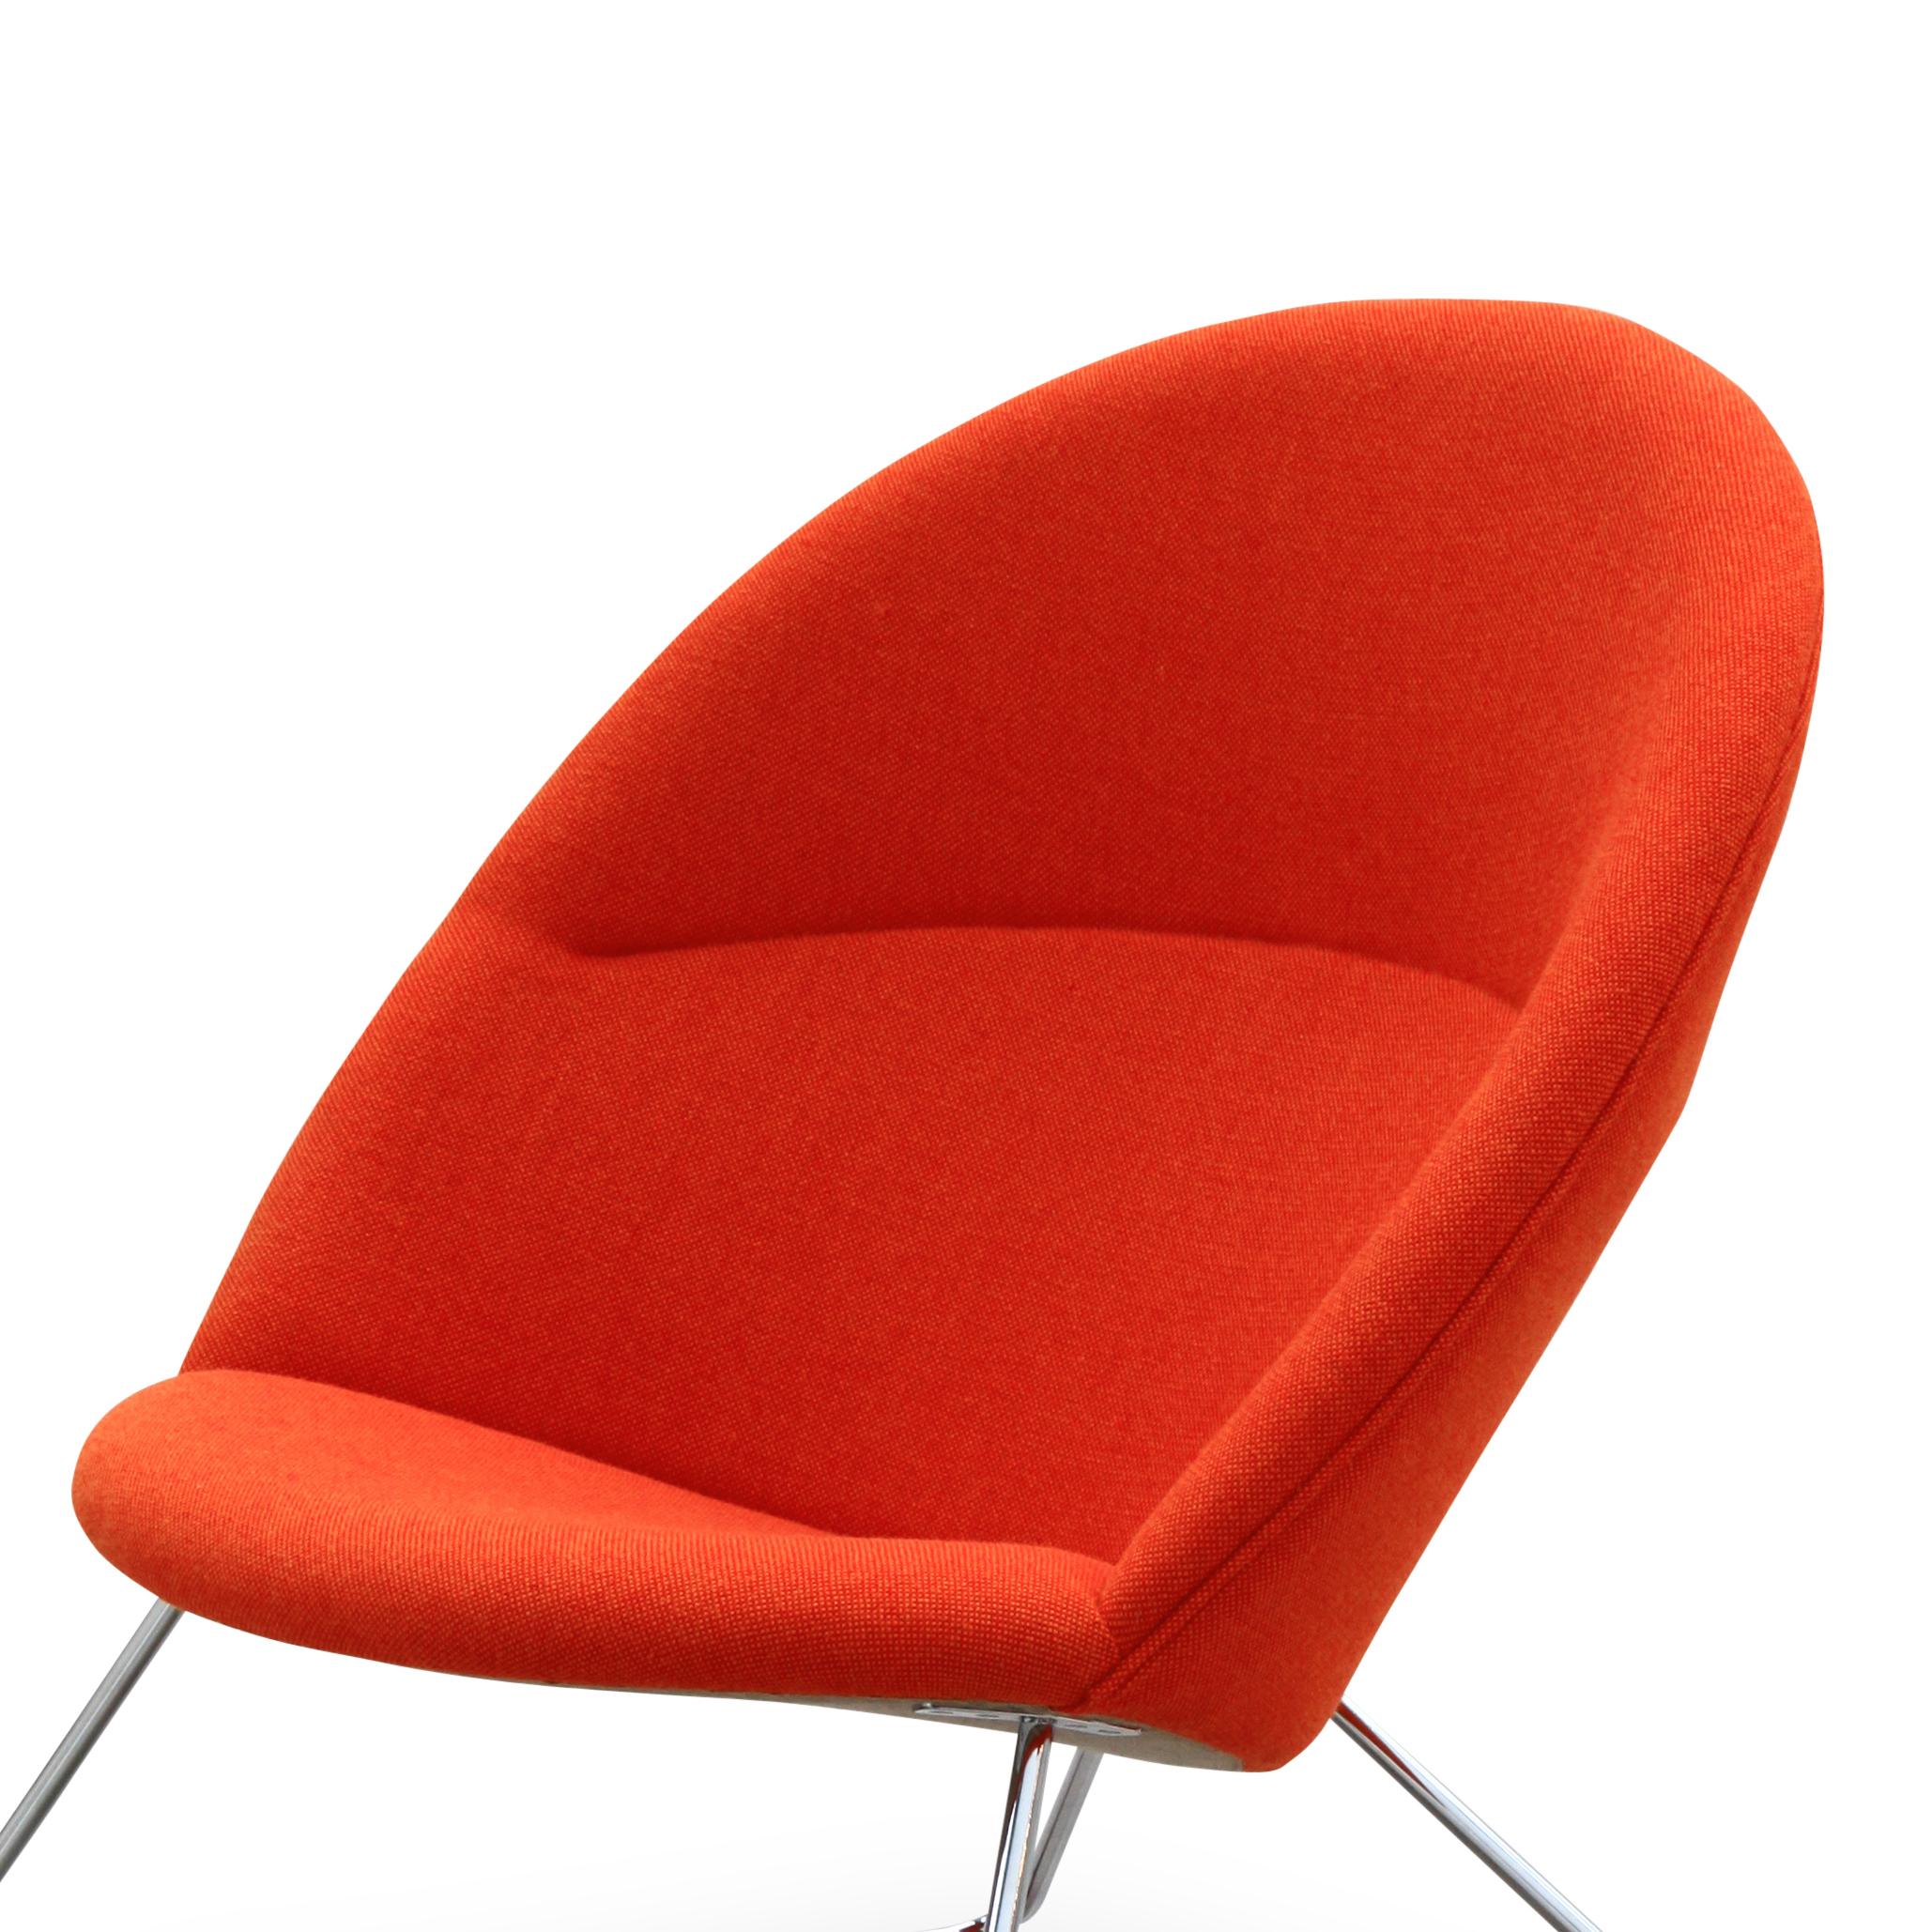 Une collection a relancé le fauteuil Dennie, qui a été conçu par Nanna et Jørgen Ditzel en 1956 pour Fritz Hansen. La chaise Dennie est joliment complétée par un pouf et une petite table.

Nanna Ditzel, qui était l'un des designers de meubles